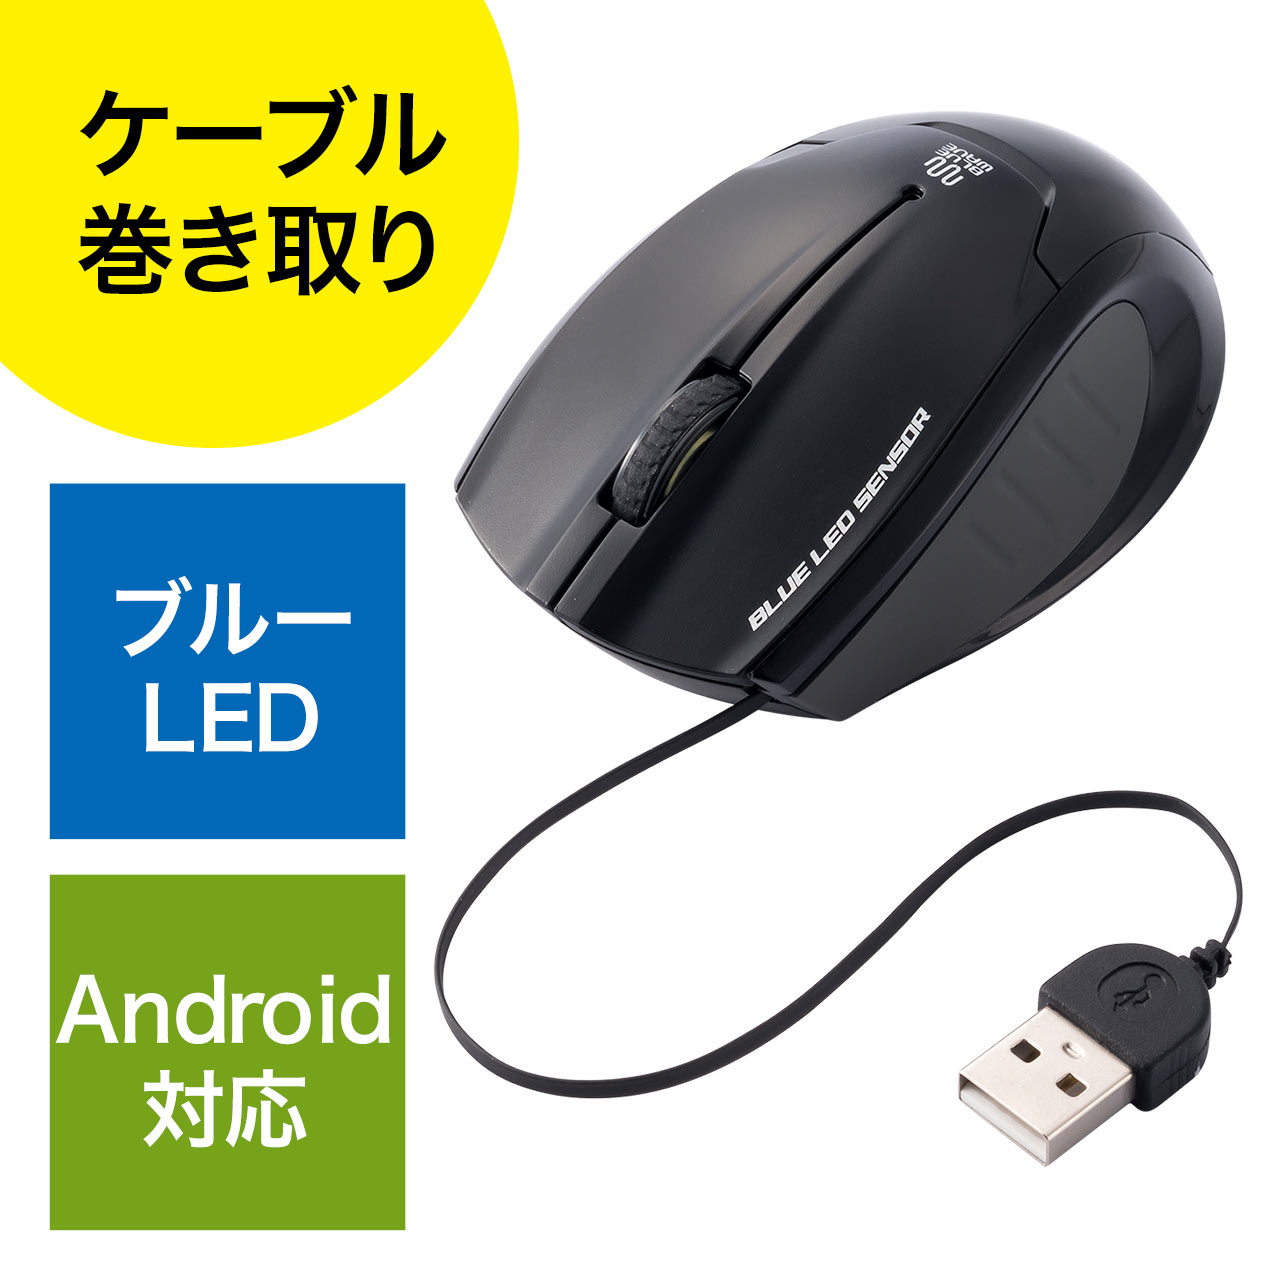 ブルーledマウス ケーブル巻取り Microusb変換 Android 小型 3ボタン ブラック 400 Ma075bkの販売商品 通販ならサンワダイレクト